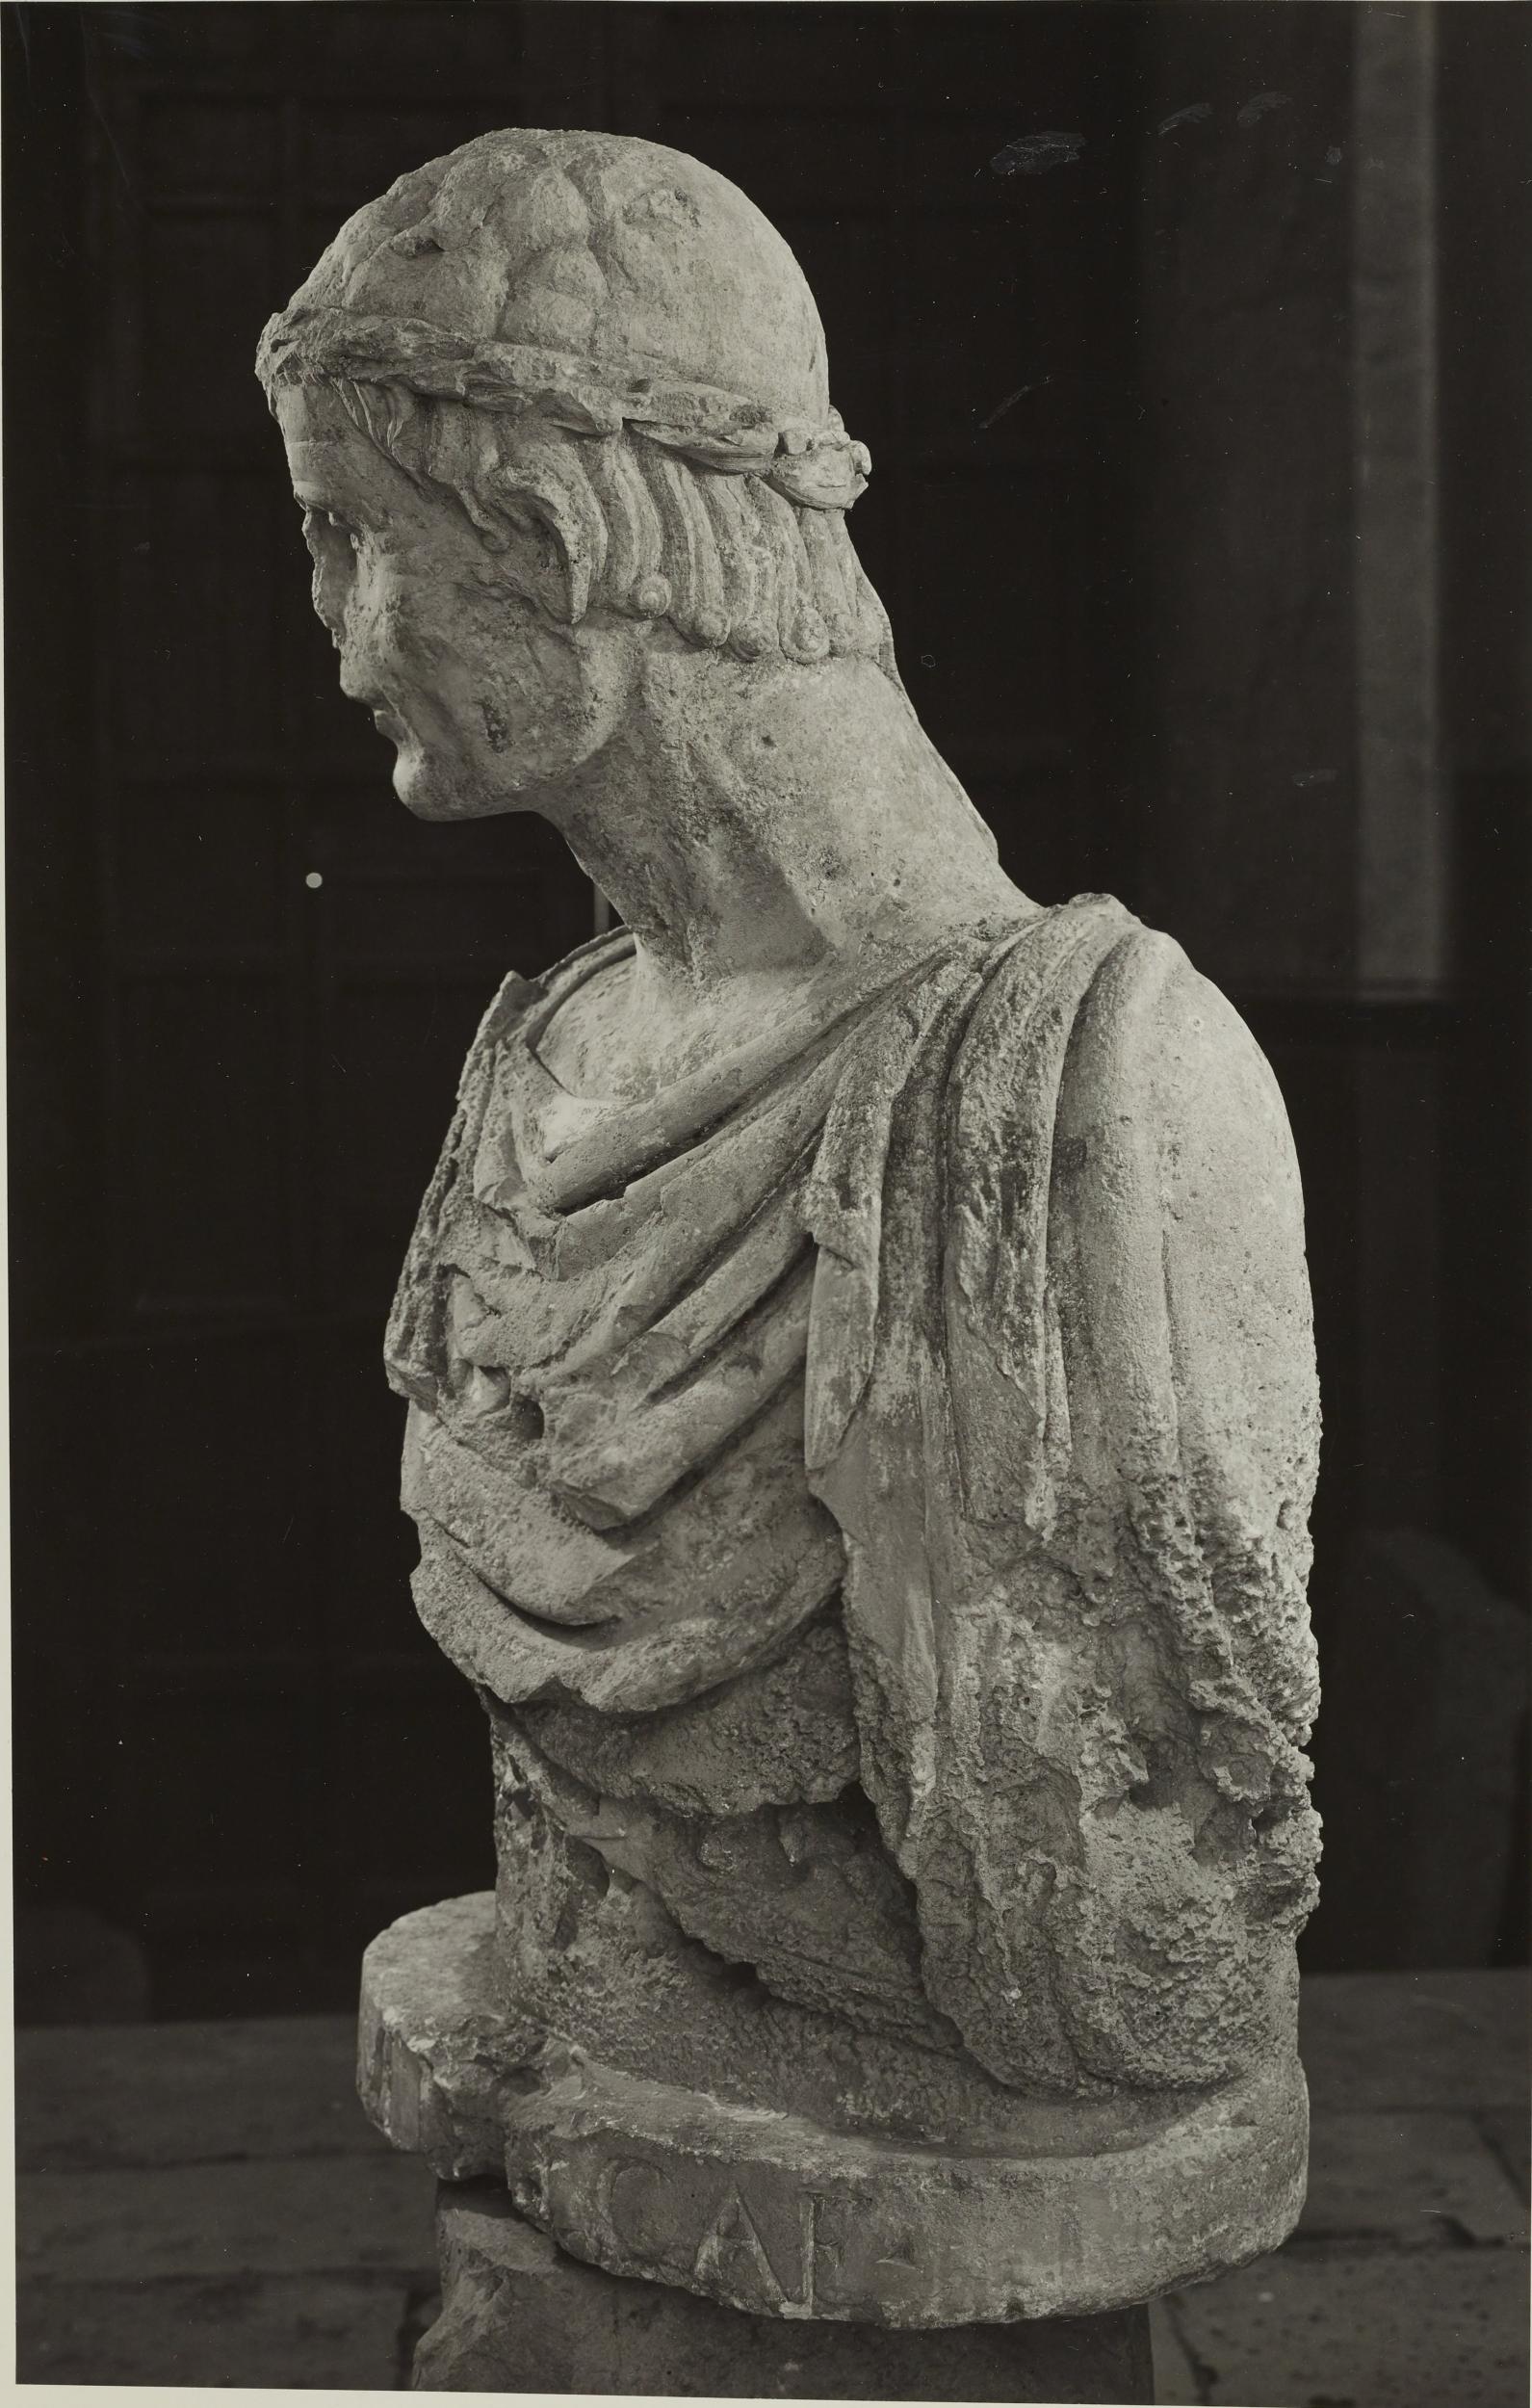 Fotografo non identificato, Barletta - Castello, Museo Civico, busto detto di Federico II, 1953–1954, gelatina ai sali d'argento/carta, MPI6023056